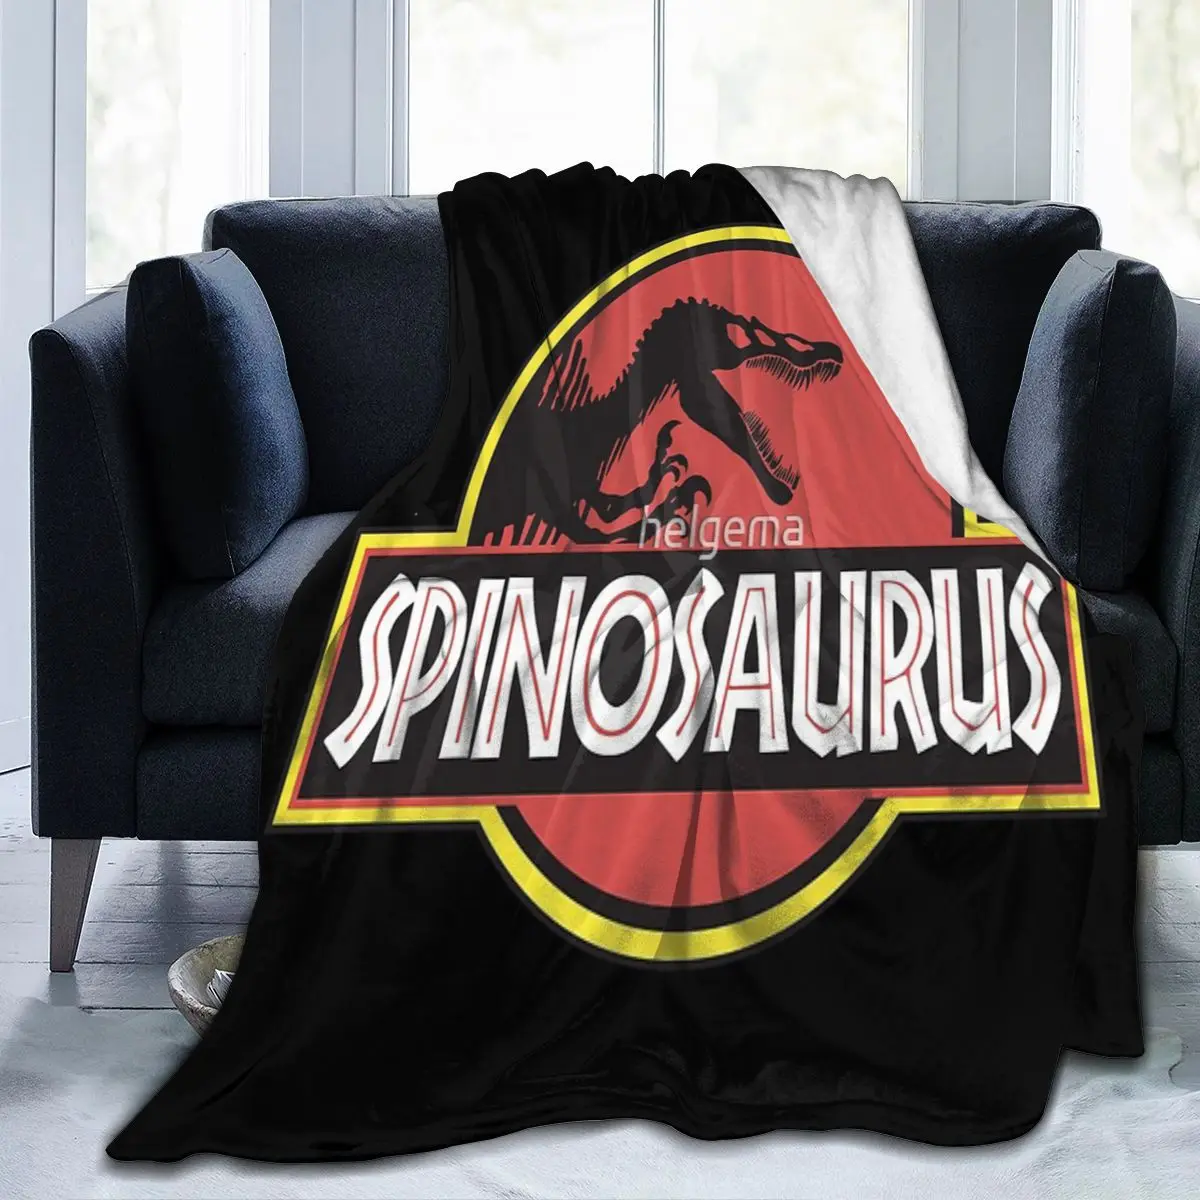 

Одеяло Spinosaurus в стиле Юрского периода, одеяло для лица, модный подарок на специальный день рождения, настраиваемый